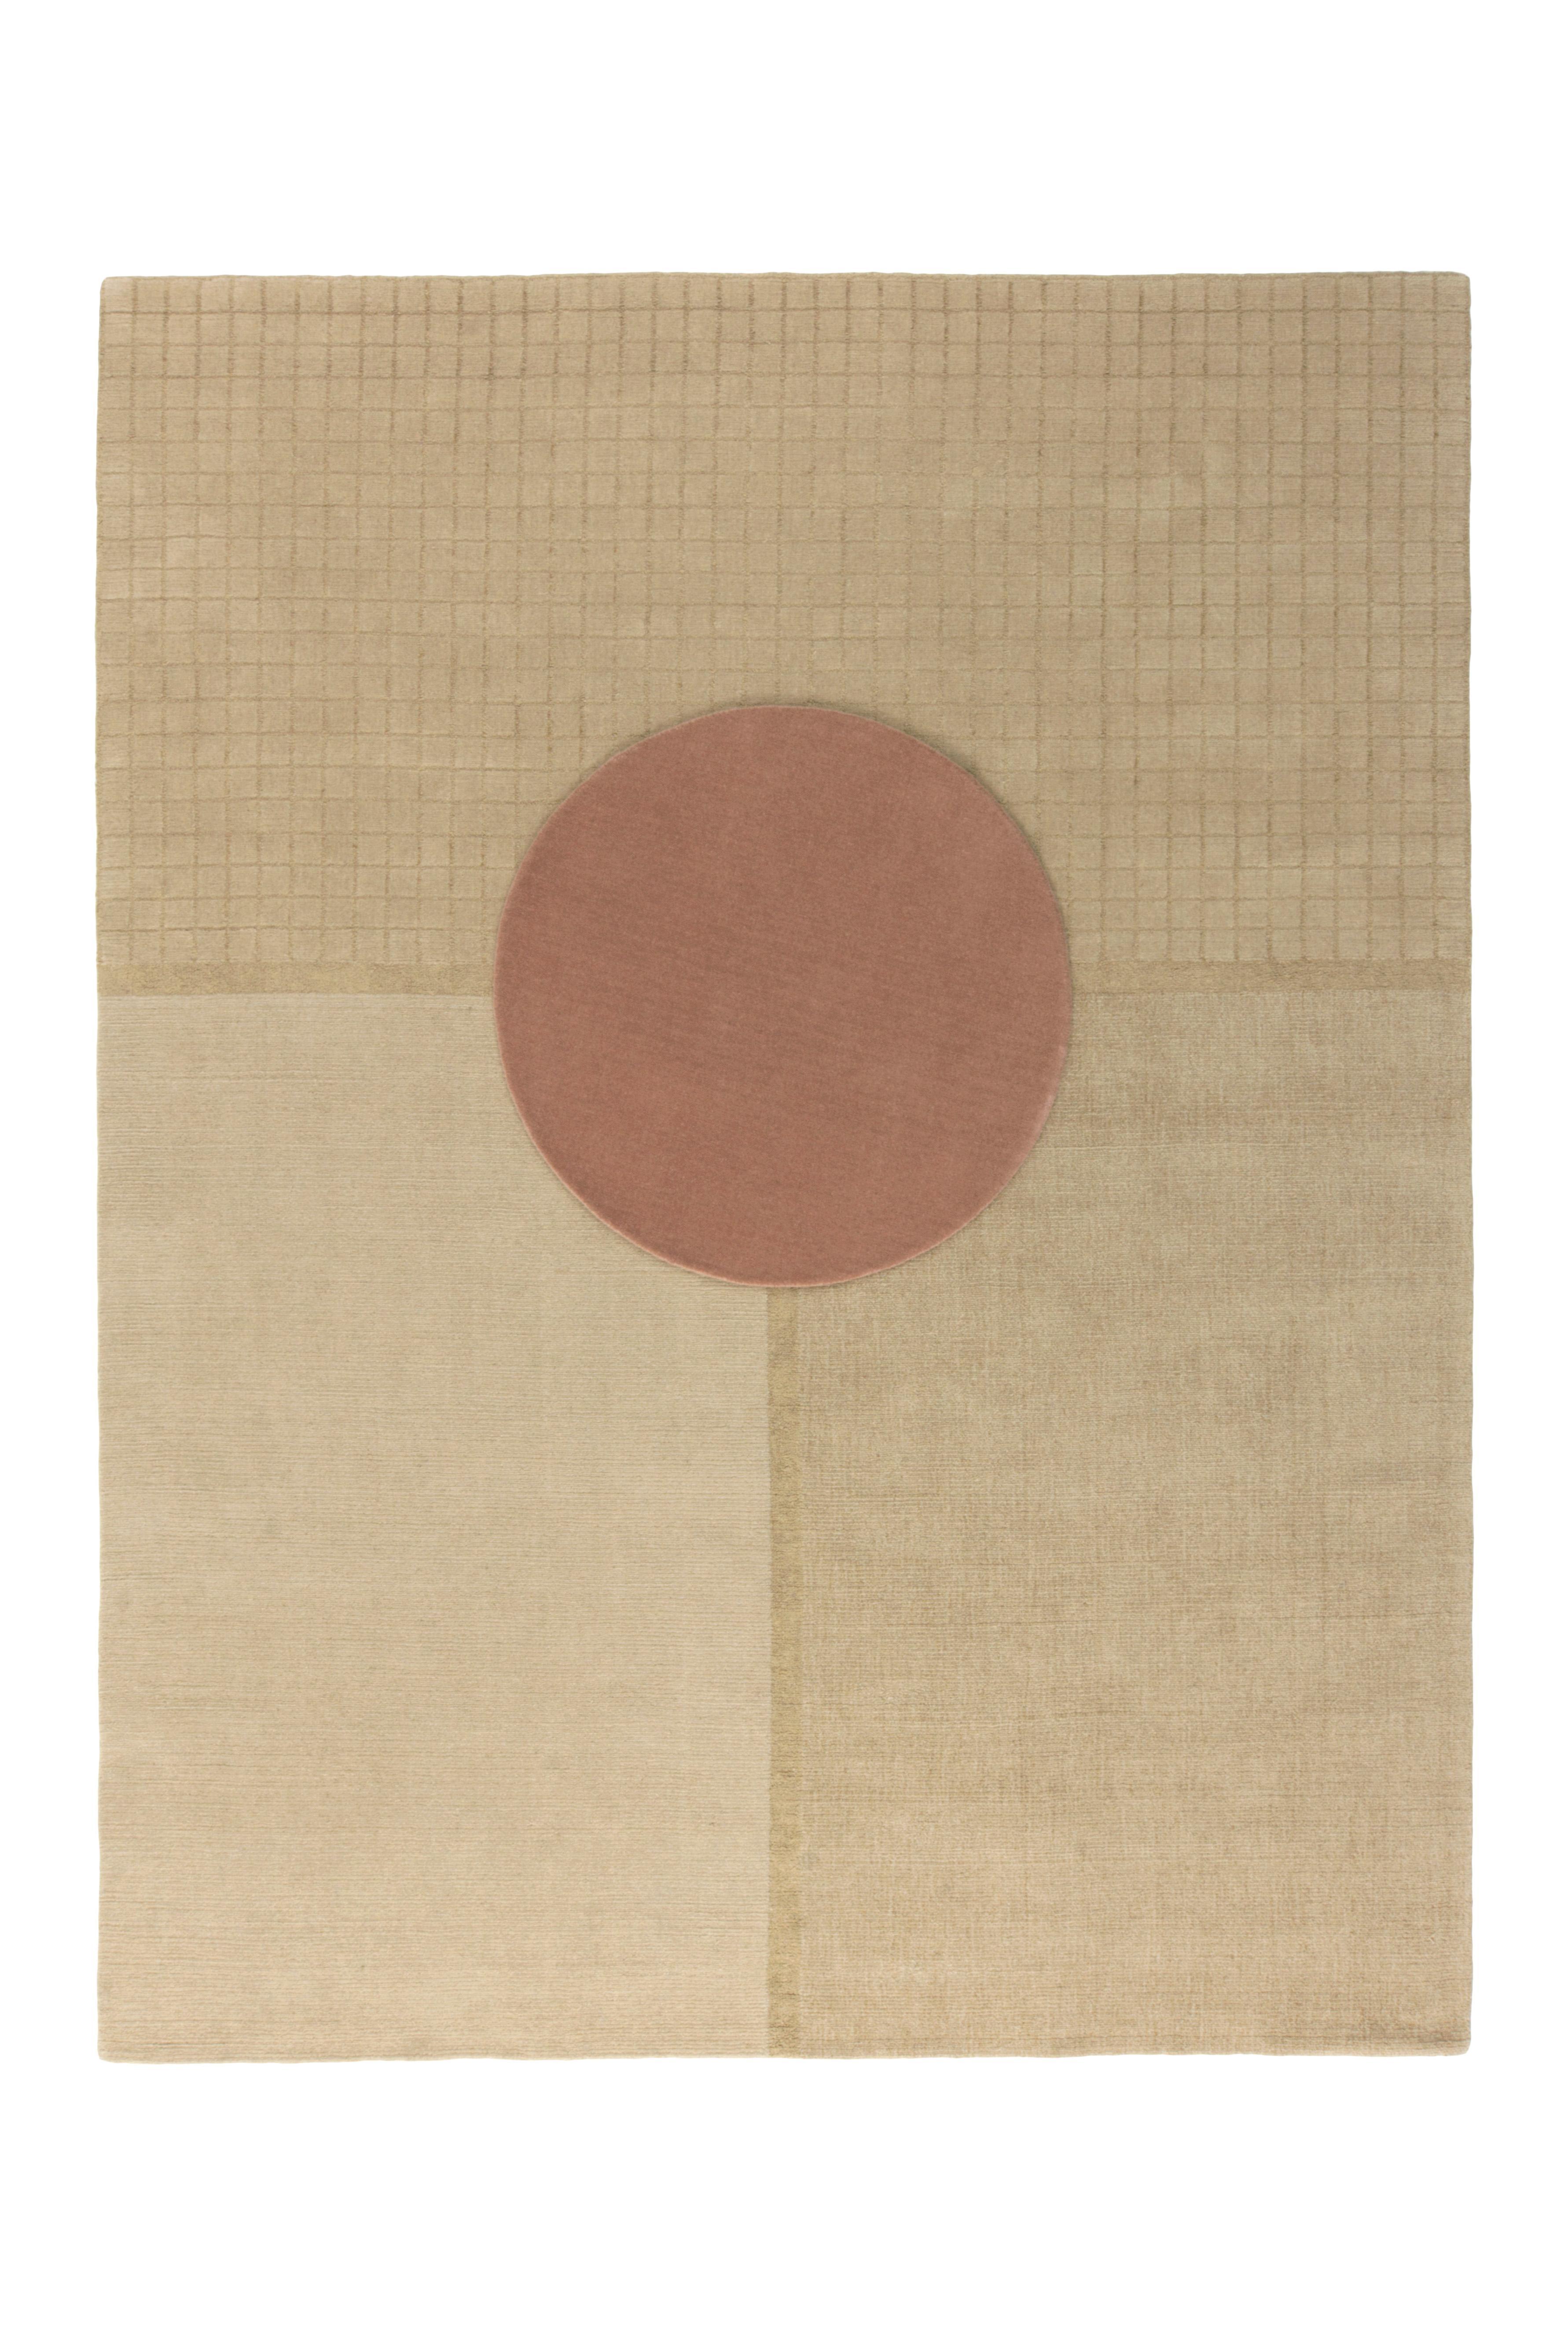 Conçu par la designer textile Mae Engelgeer et inspiré par la sensation, l'esthétique et l'alignement graphique du sol japonais traditionnel Tatami, Ceremony est un groupe de trois tapis, Daytime, Evening Glow et Moonlight, et d'un tapis circulaire,